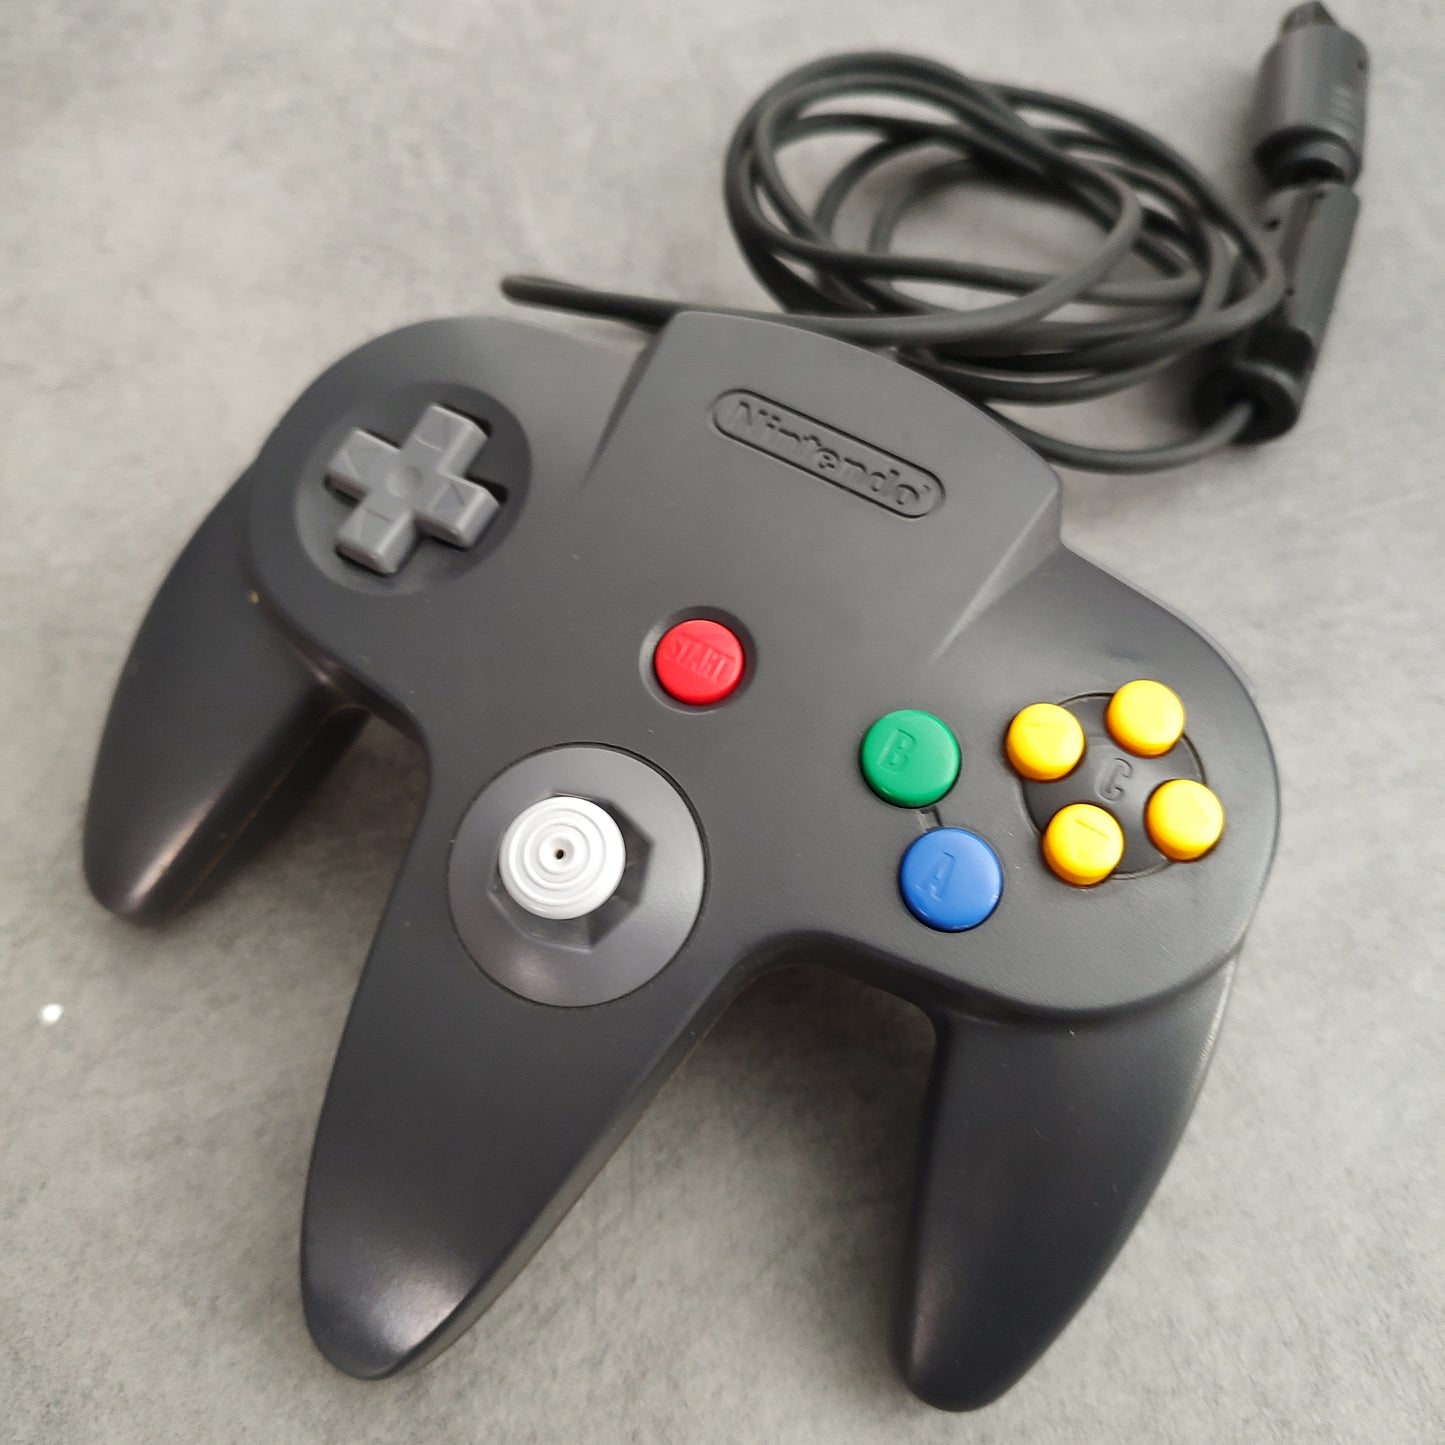 Joypad Nintendo 64